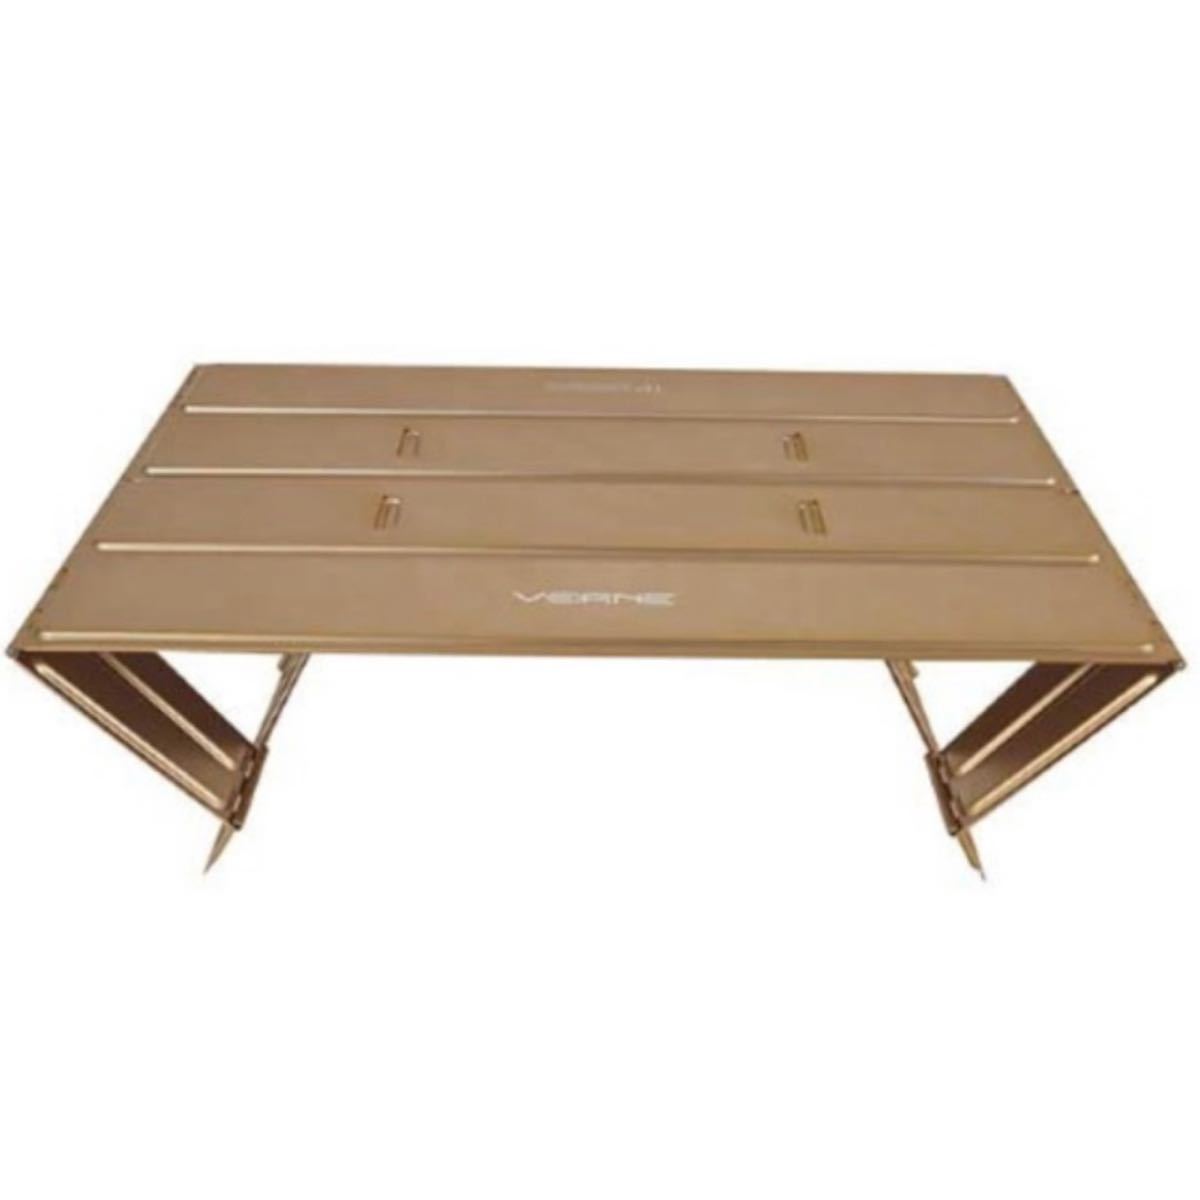 VERNE トレッキングパッド ＋ カッティングパッド ベルン テーブル ブラック テーブル コンパクト ローテーブル